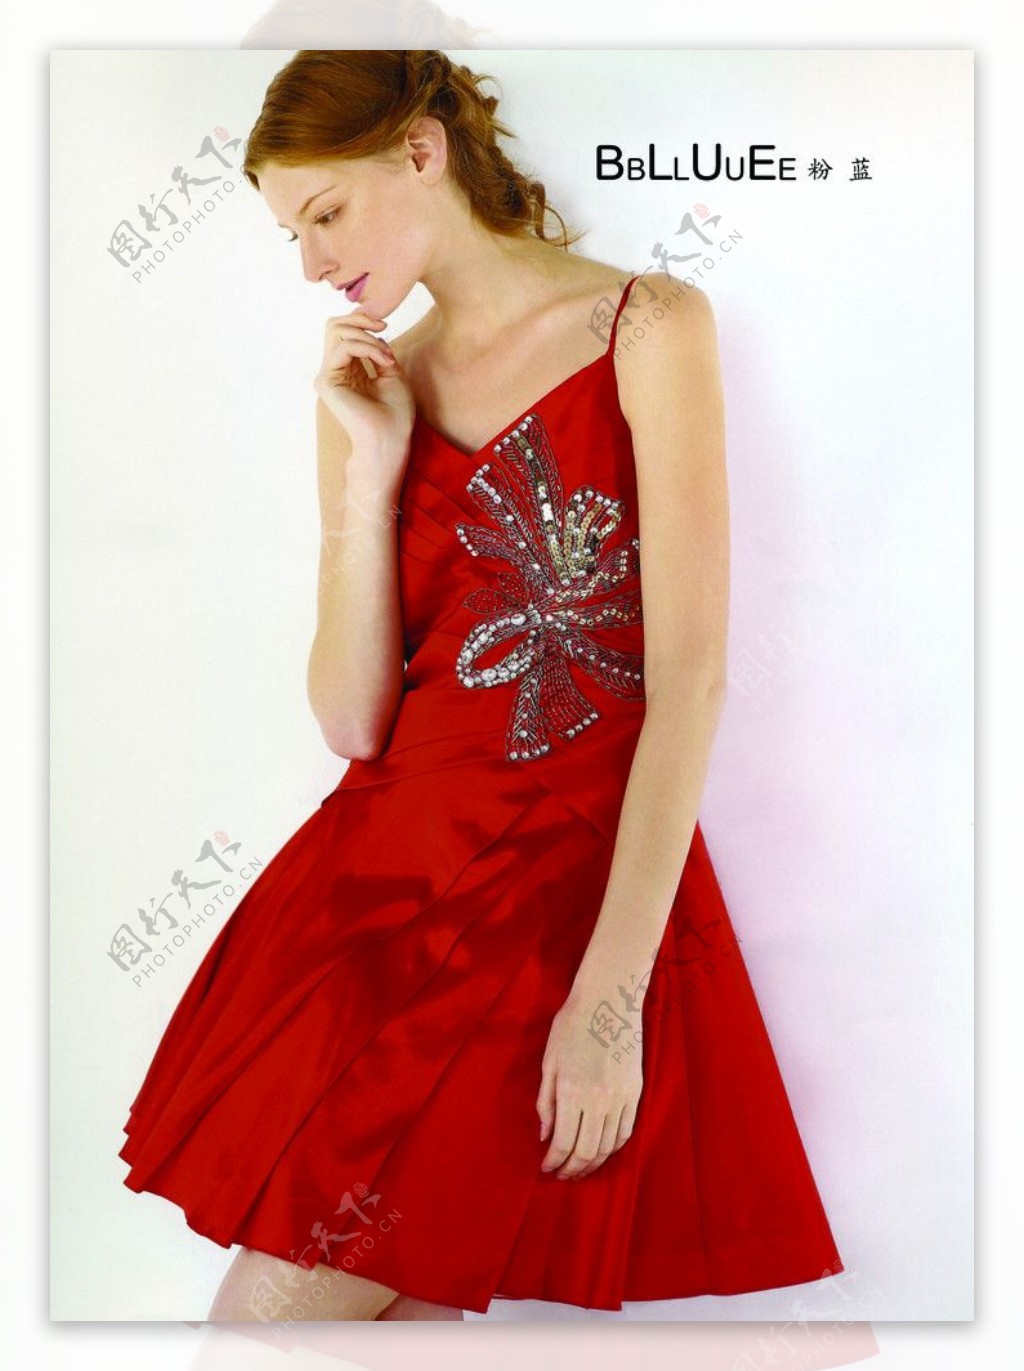 粉蓝衣橱服饰LOGO2010春夏女装洋红色吊带长裙金发女郎600DPI图片